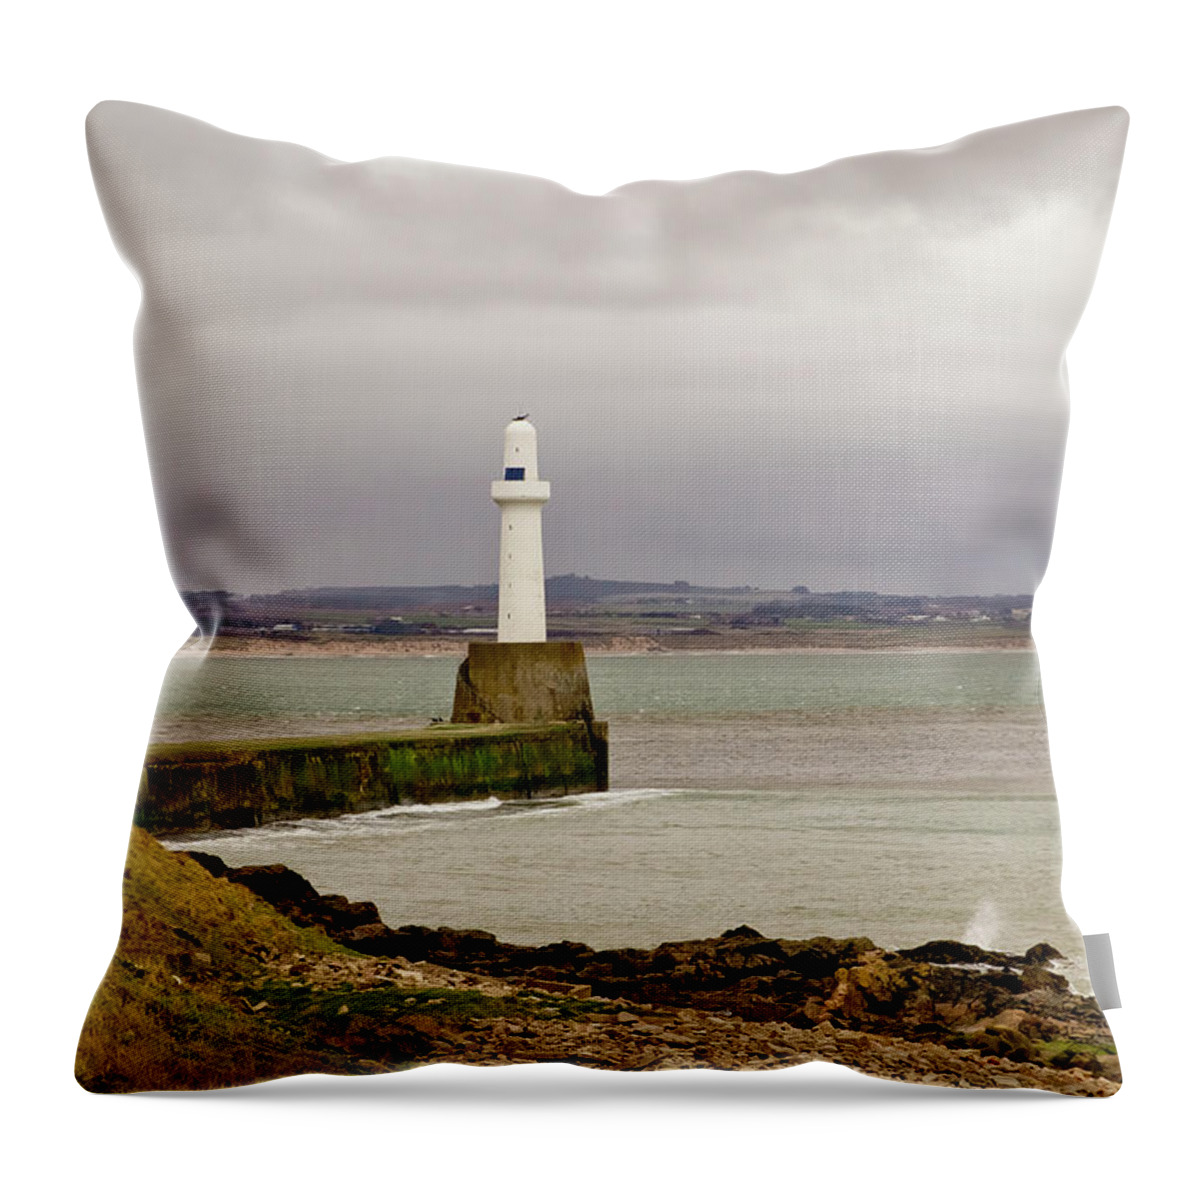 Aberdeen Throw Pillow featuring the photograph South Breakwater Lighthouse. Aberdeen. by Elena Perelman